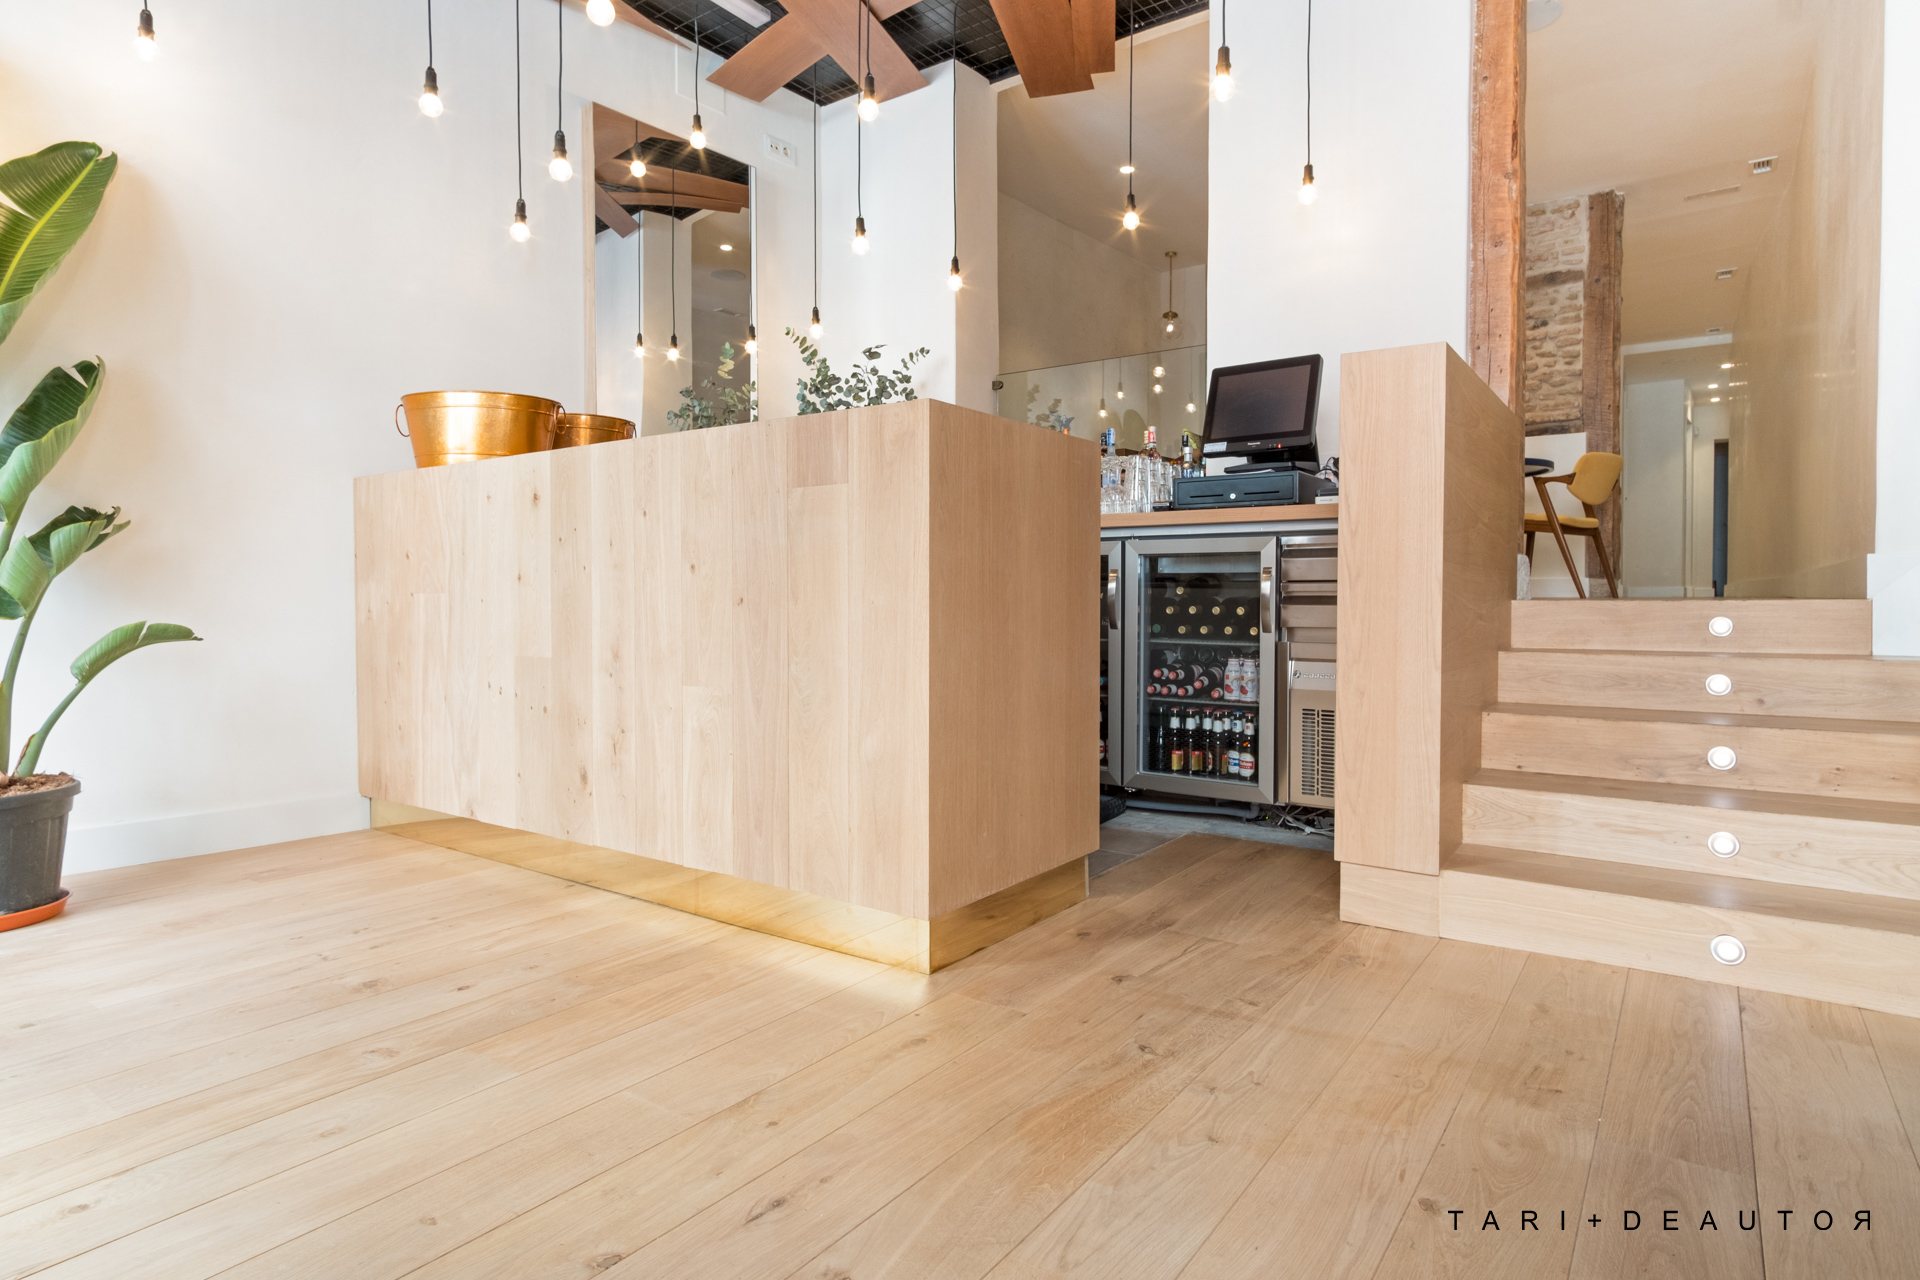 Proyecto restaurante en madera natural, tarima, escalera, mobiliario y revestimiento de techo